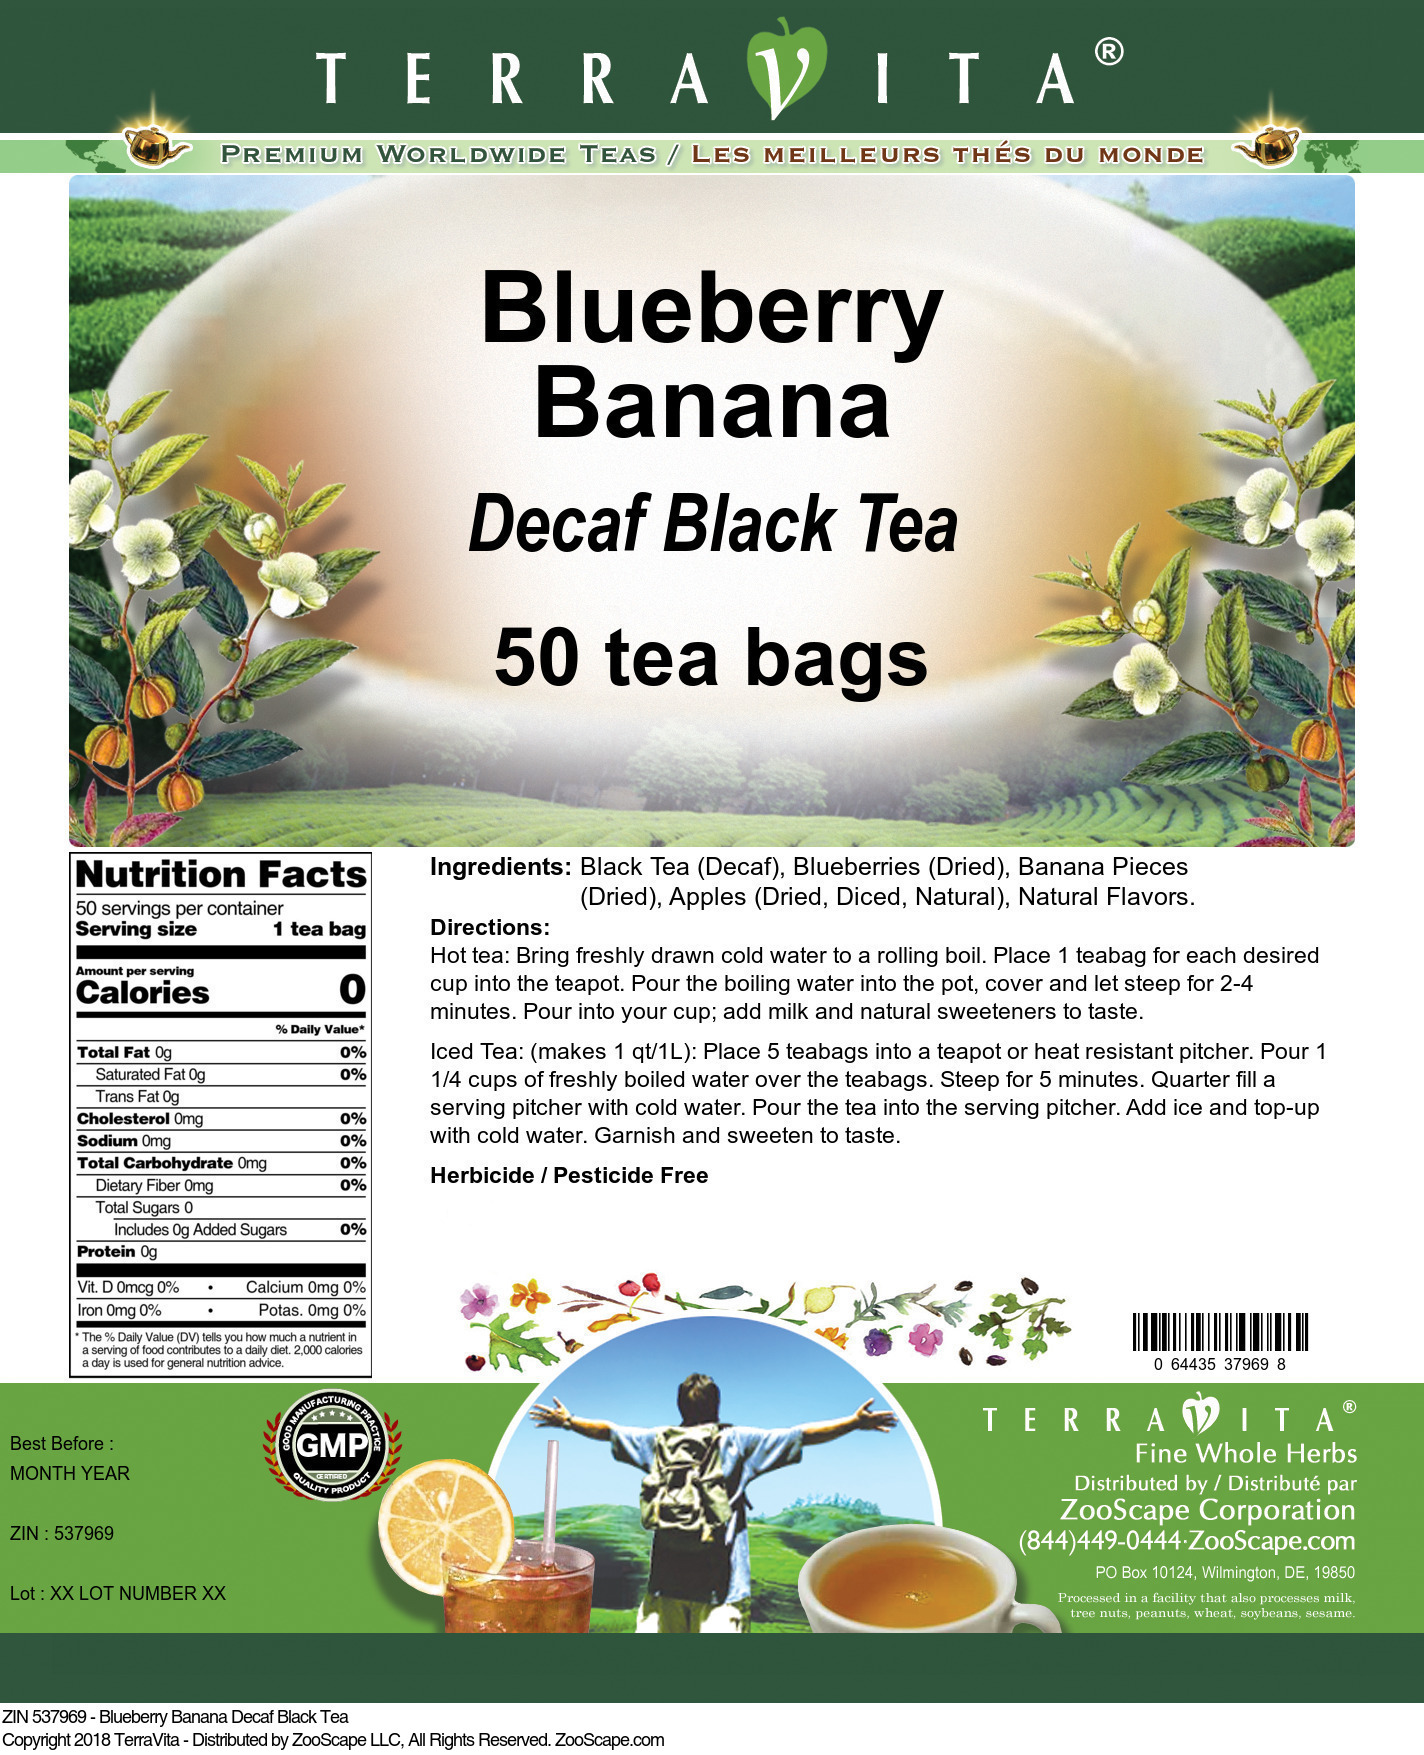 Blueberry Banana Decaf Black Tea - Label